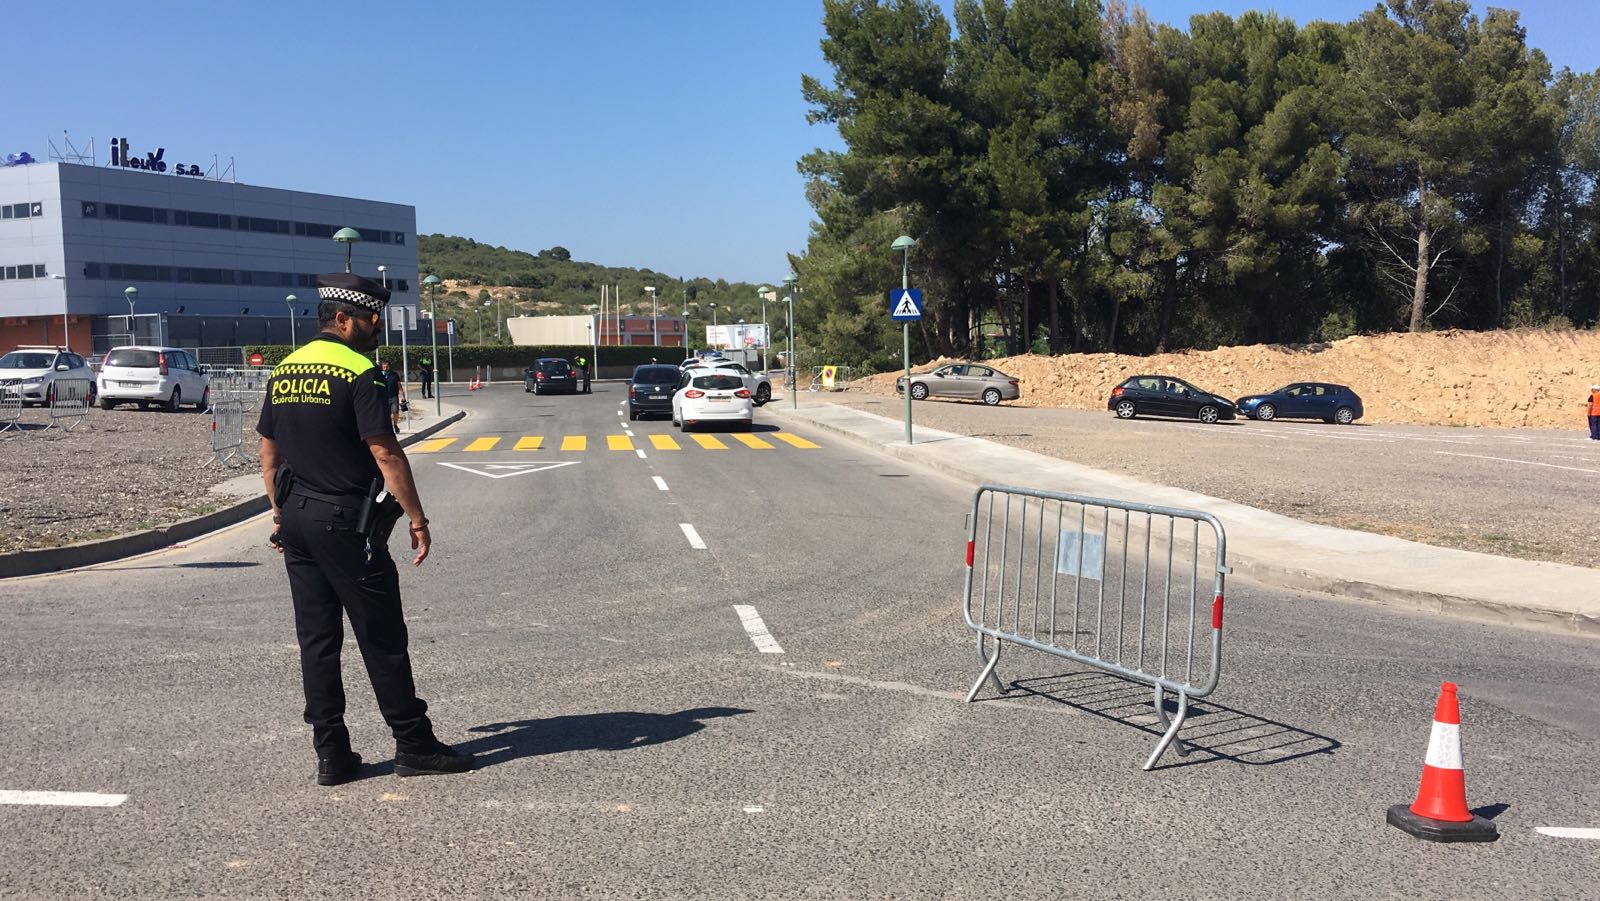 Un conductor begut dels Jocs Mediterranis atropella un nen de cinc anys i fuig